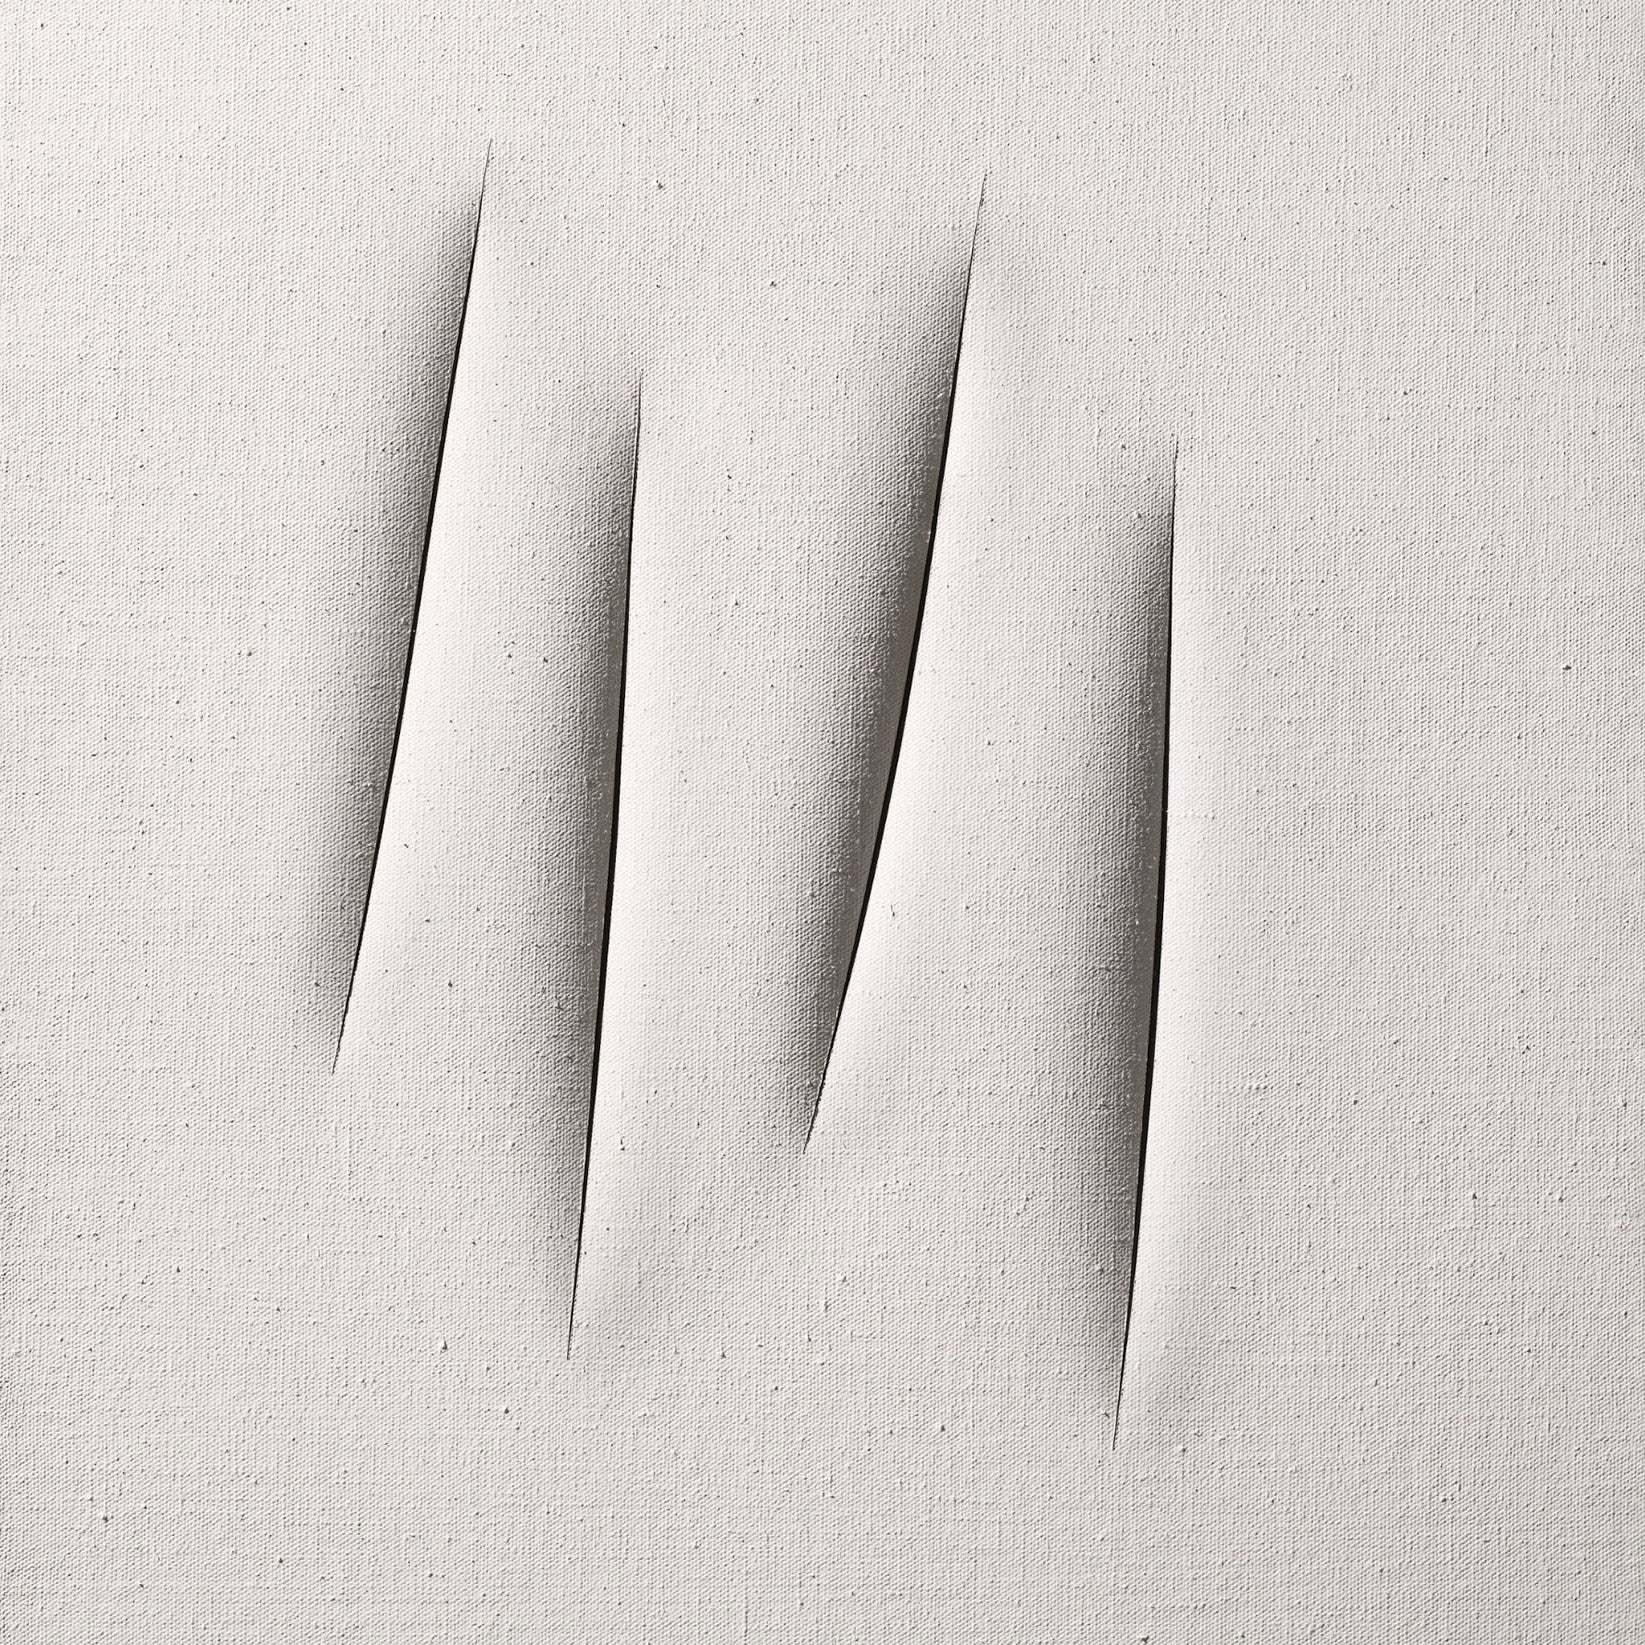 Kunstwerk eingeschnittene weiße Leinwand, Titel Concetto Spaziale Attese, Künstler Lucio Fontana